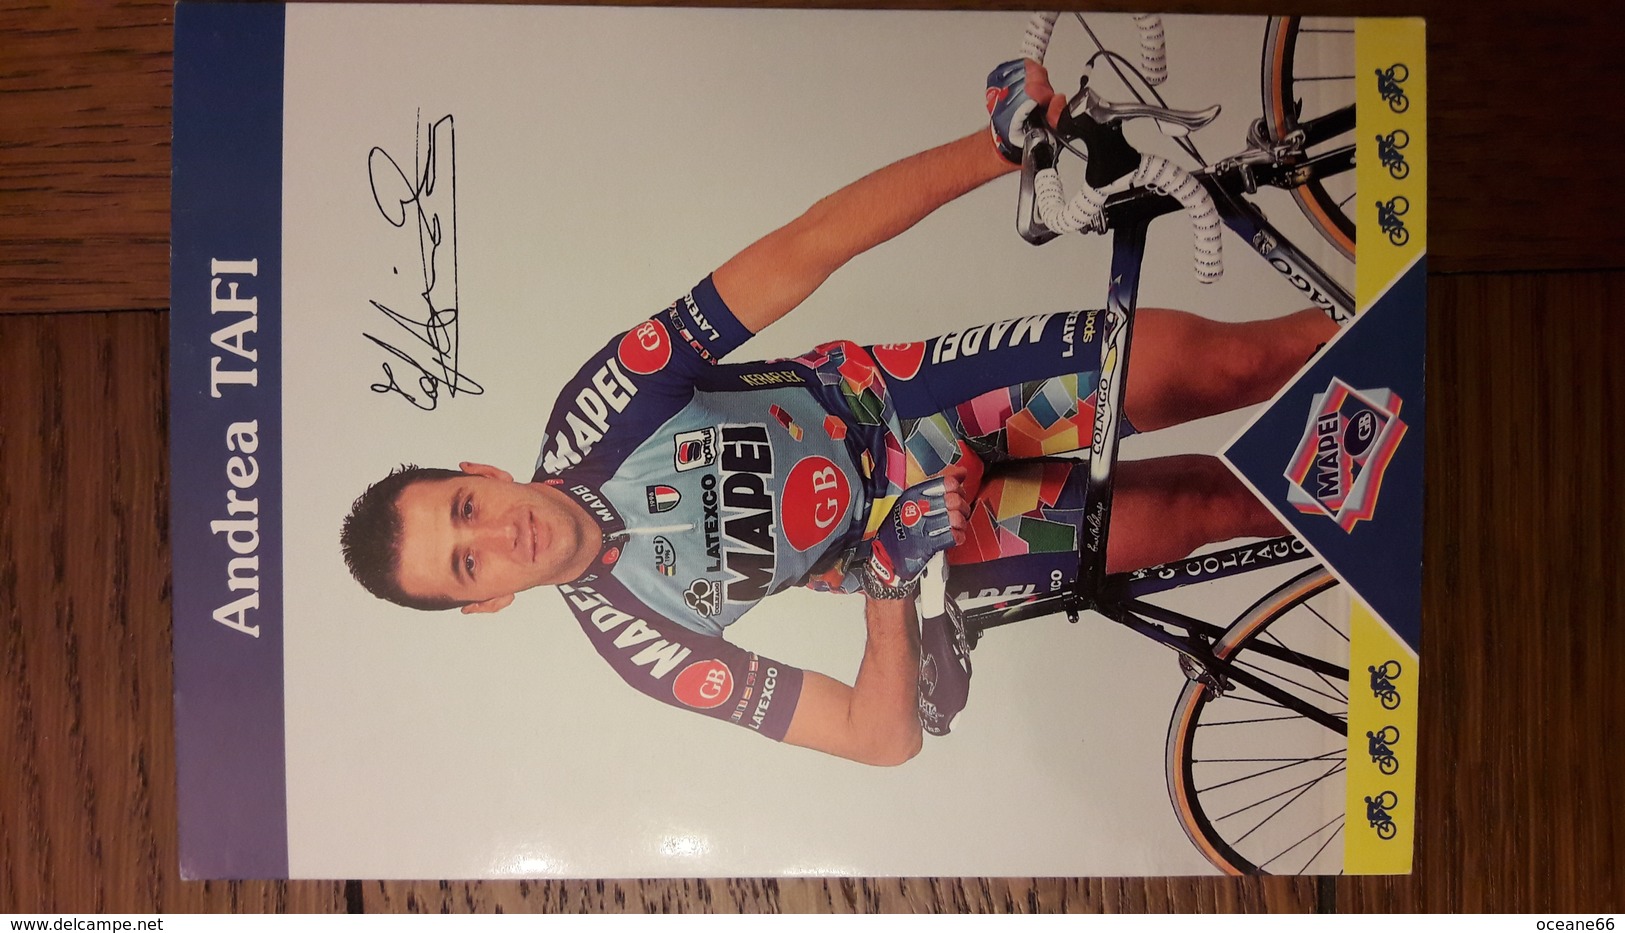 ANdrea TAFI Mapei 1997 - Ciclismo